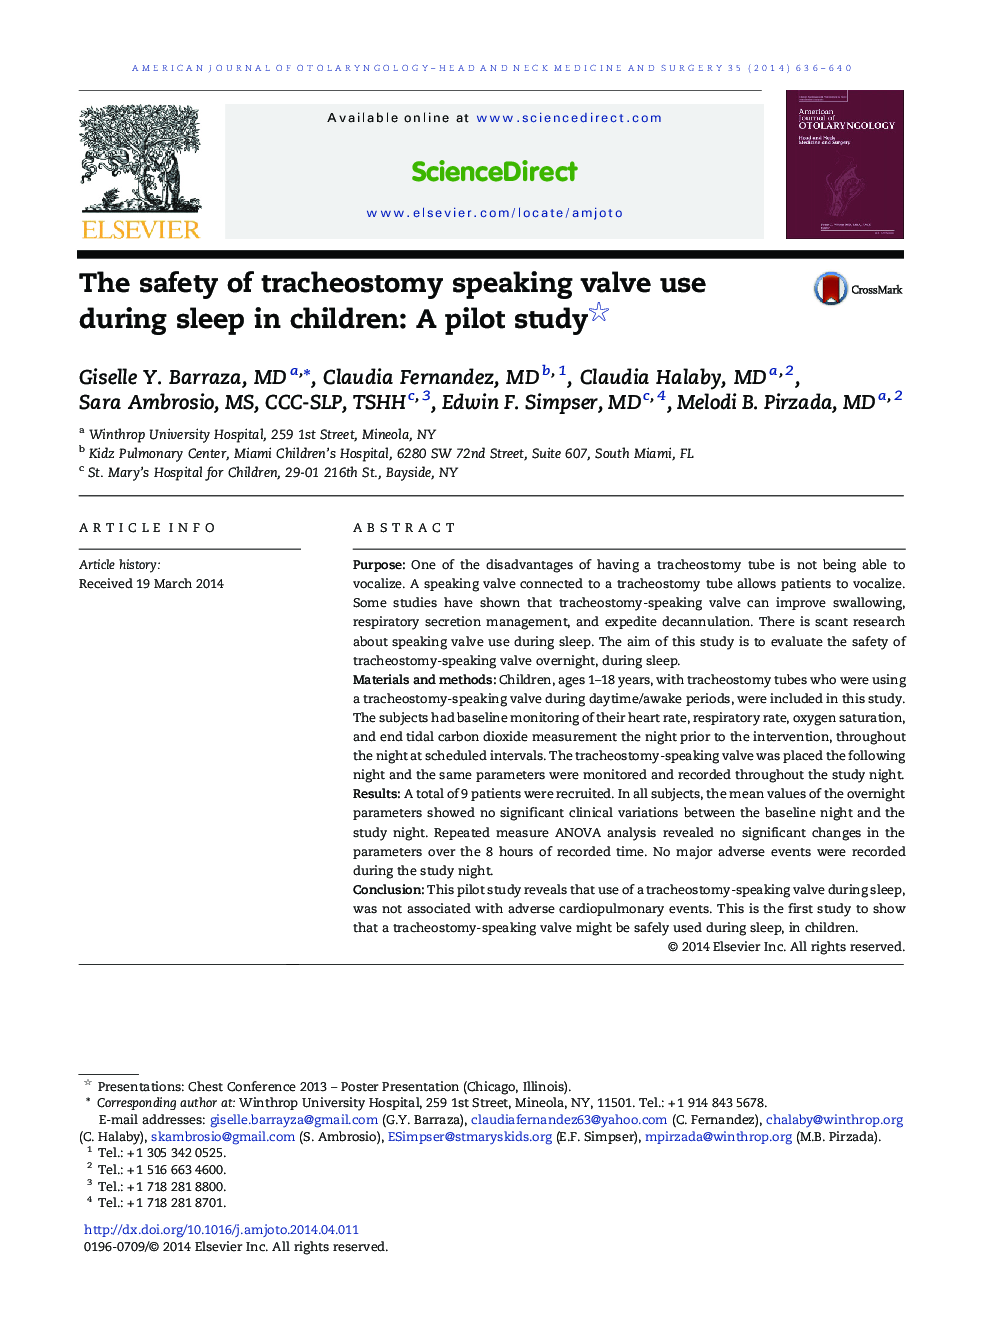 ایمنی سوئیچ تراکئوستومی در هنگام خواب در کودکان استفاده می شود: یک مطالعه آزمایشی 